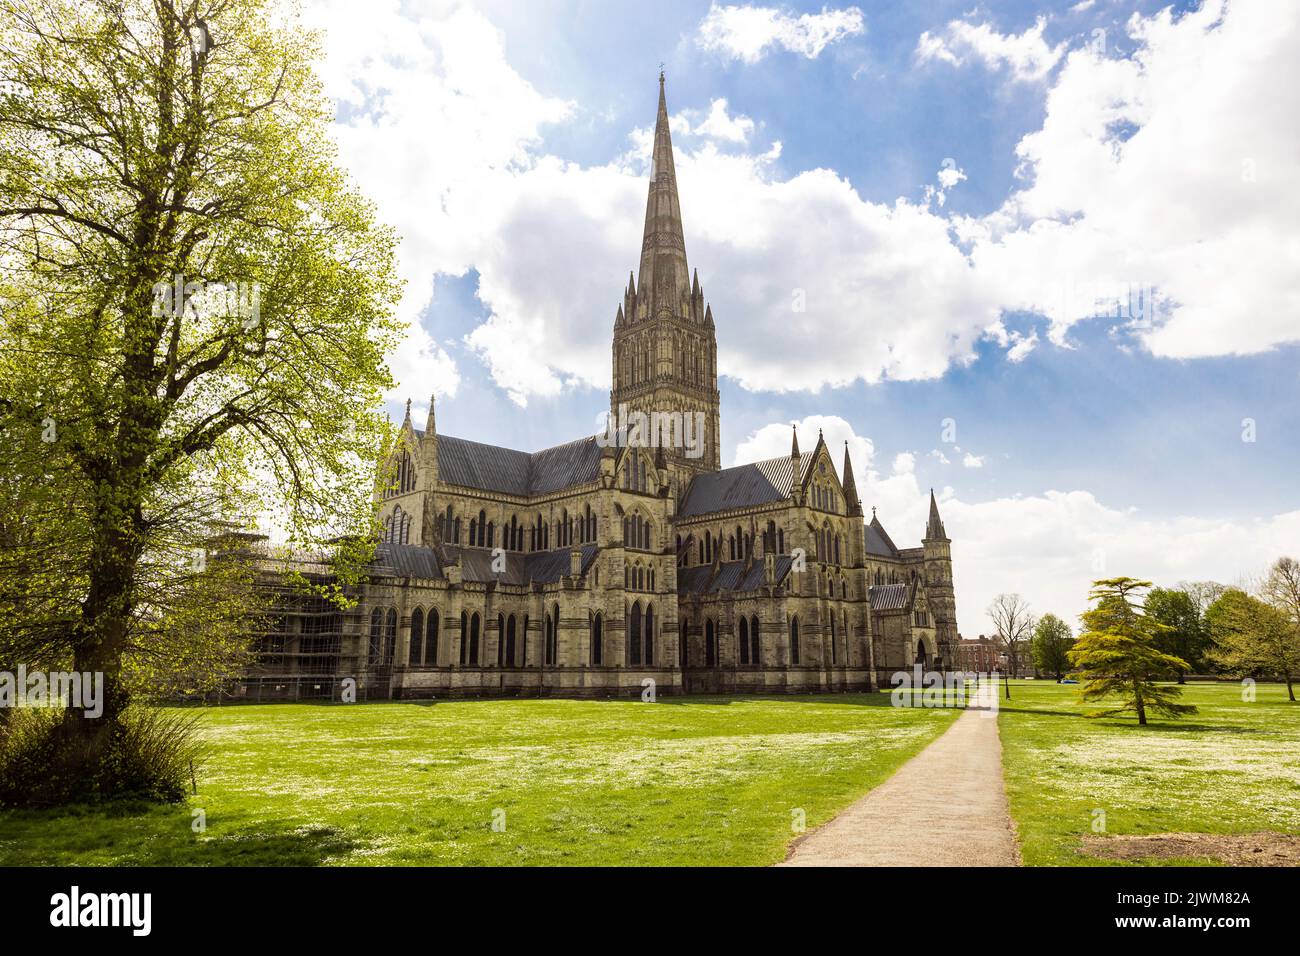 Kathedrale Von Salisbury. Kathedrale Kirche der seligen Jungfrau Maria. Die anglikanische gotische Kathedrale in Salisbury, England, Großbritannien Stockfoto